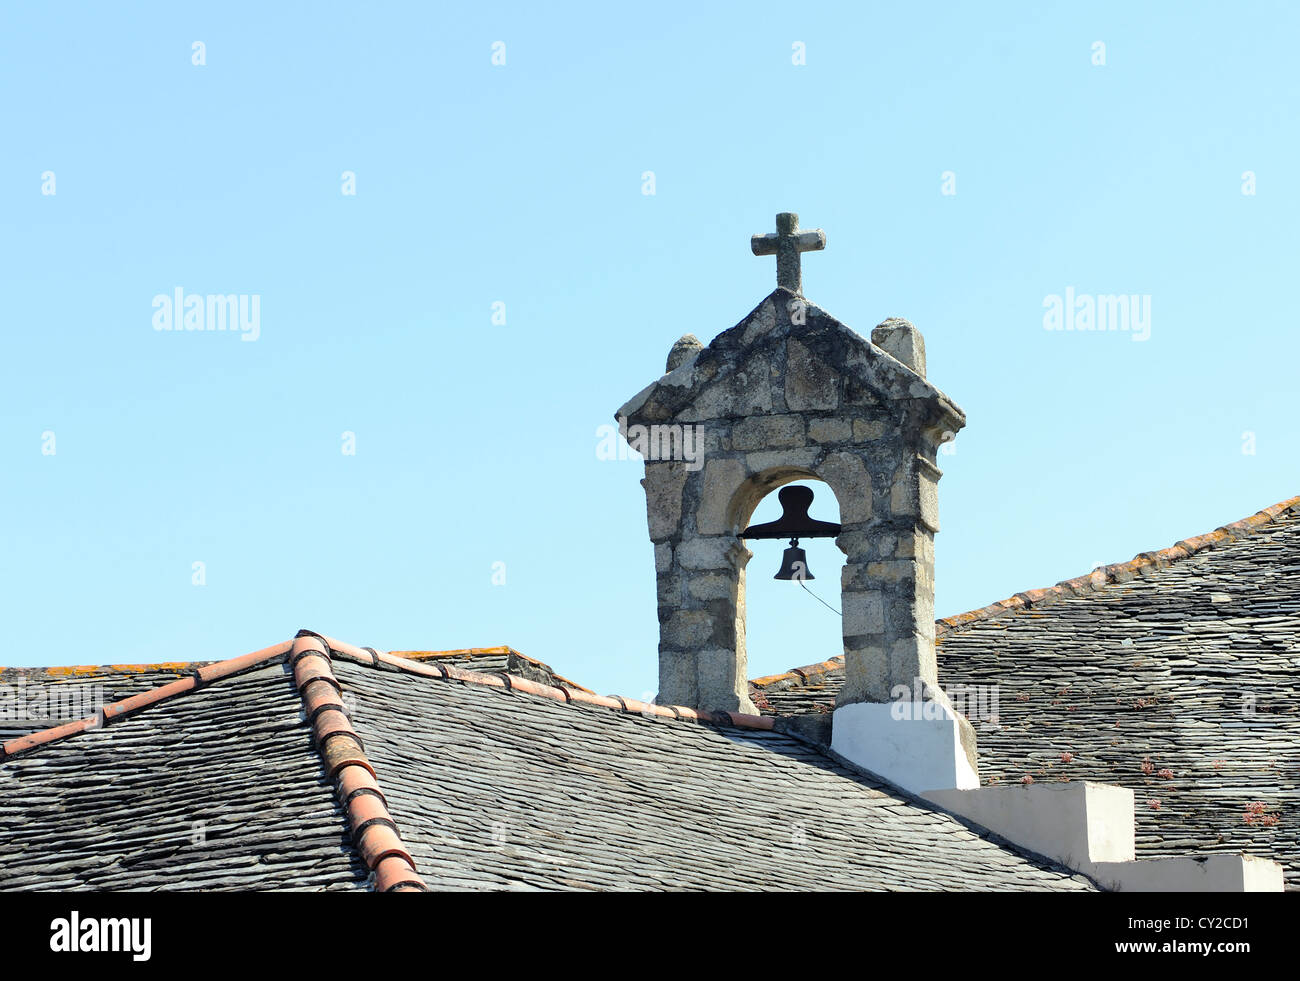 Campana en el techo oa una iglesia en el lado del puerto de Puerto de Vaga. Puerto de Vega, Navia, Asturias, España. Foto de stock